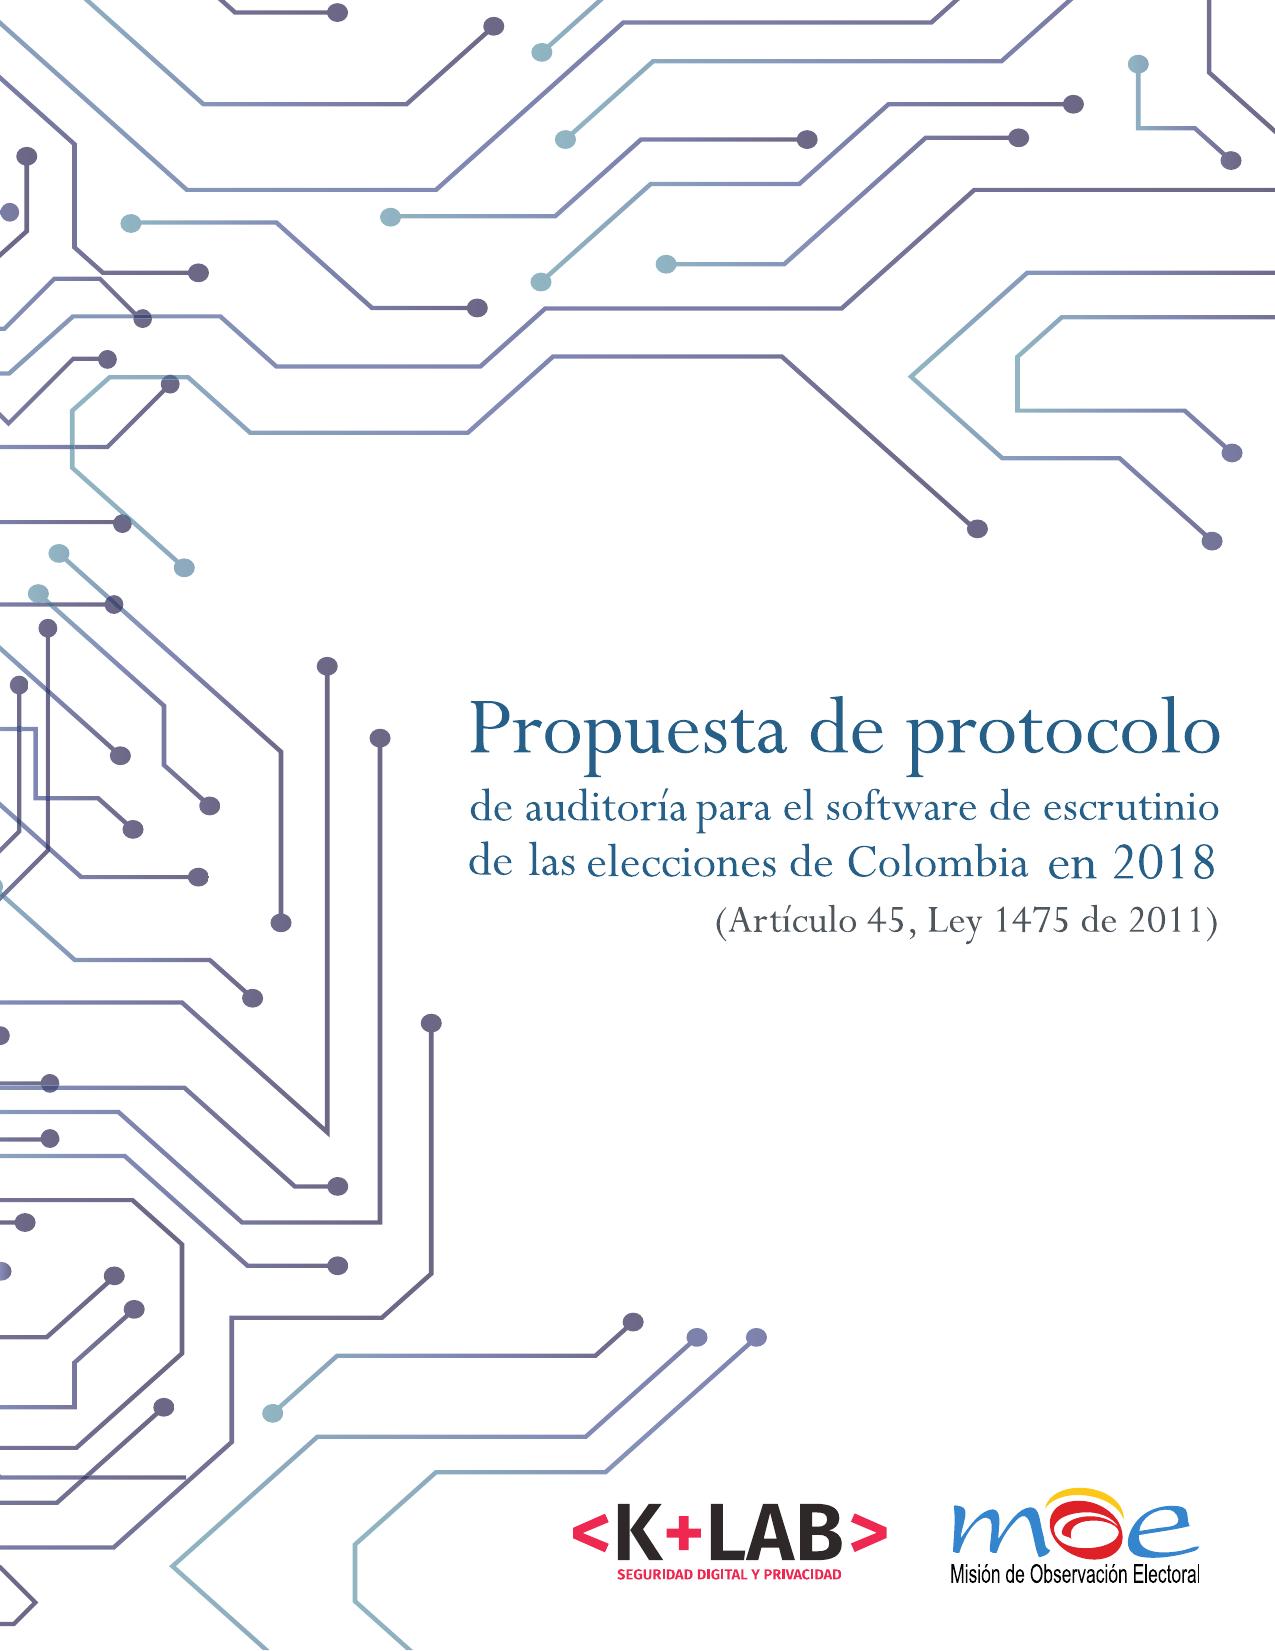 Propuesta de protocolo de auditoría para el software de escrutinio de las elecciones de Colombia en 2018 :: Artículo 45 ley 1475 de 2011